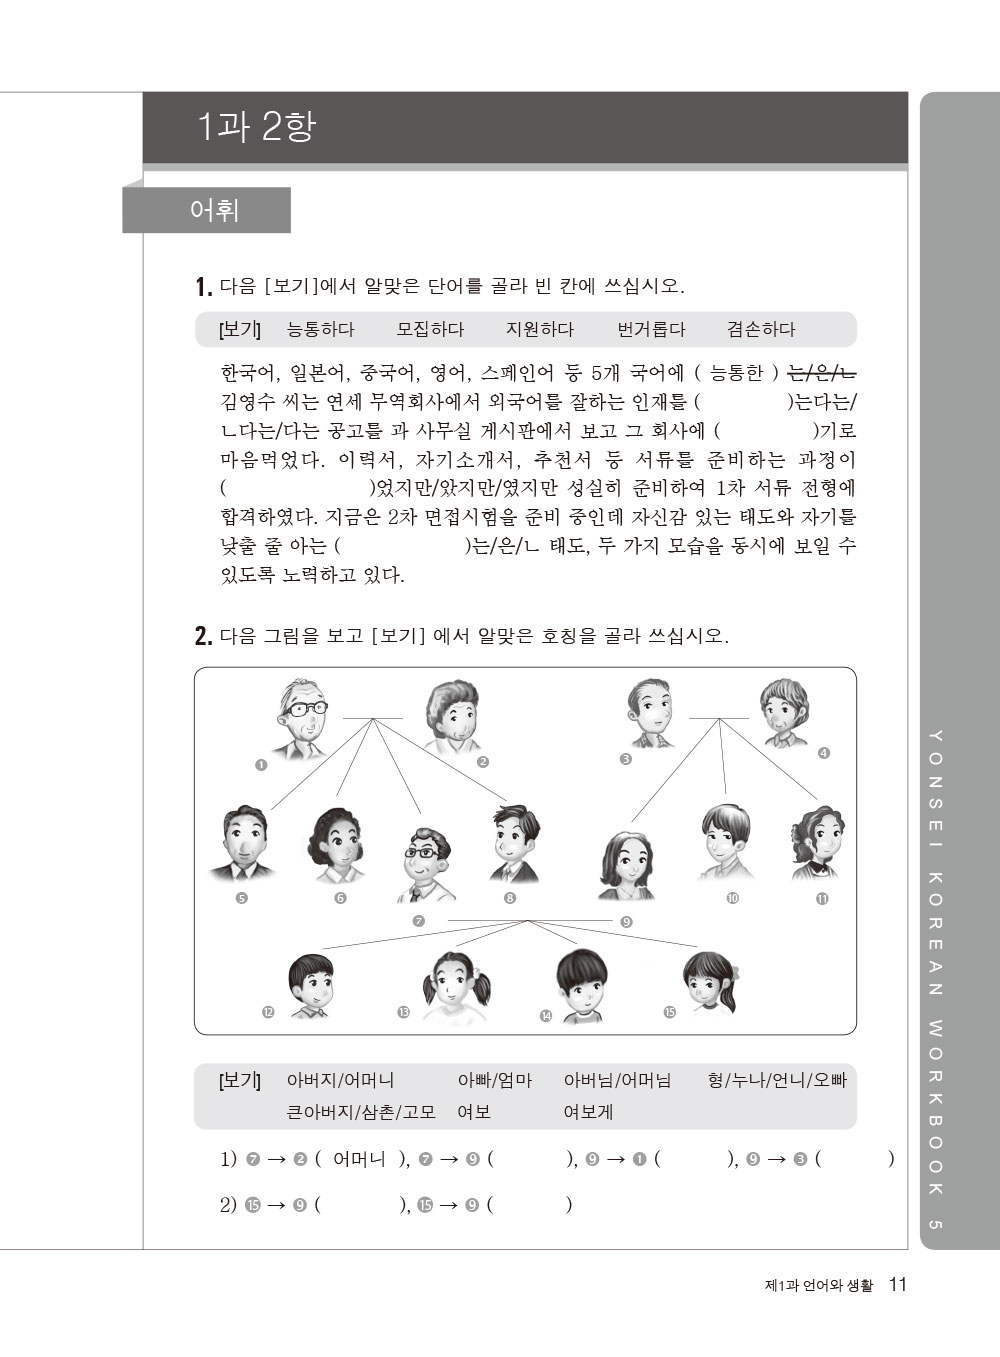 ►語言學習►暢銷書► 最權威的延世大學韓國語練習本5(附MP3 光碟一片)